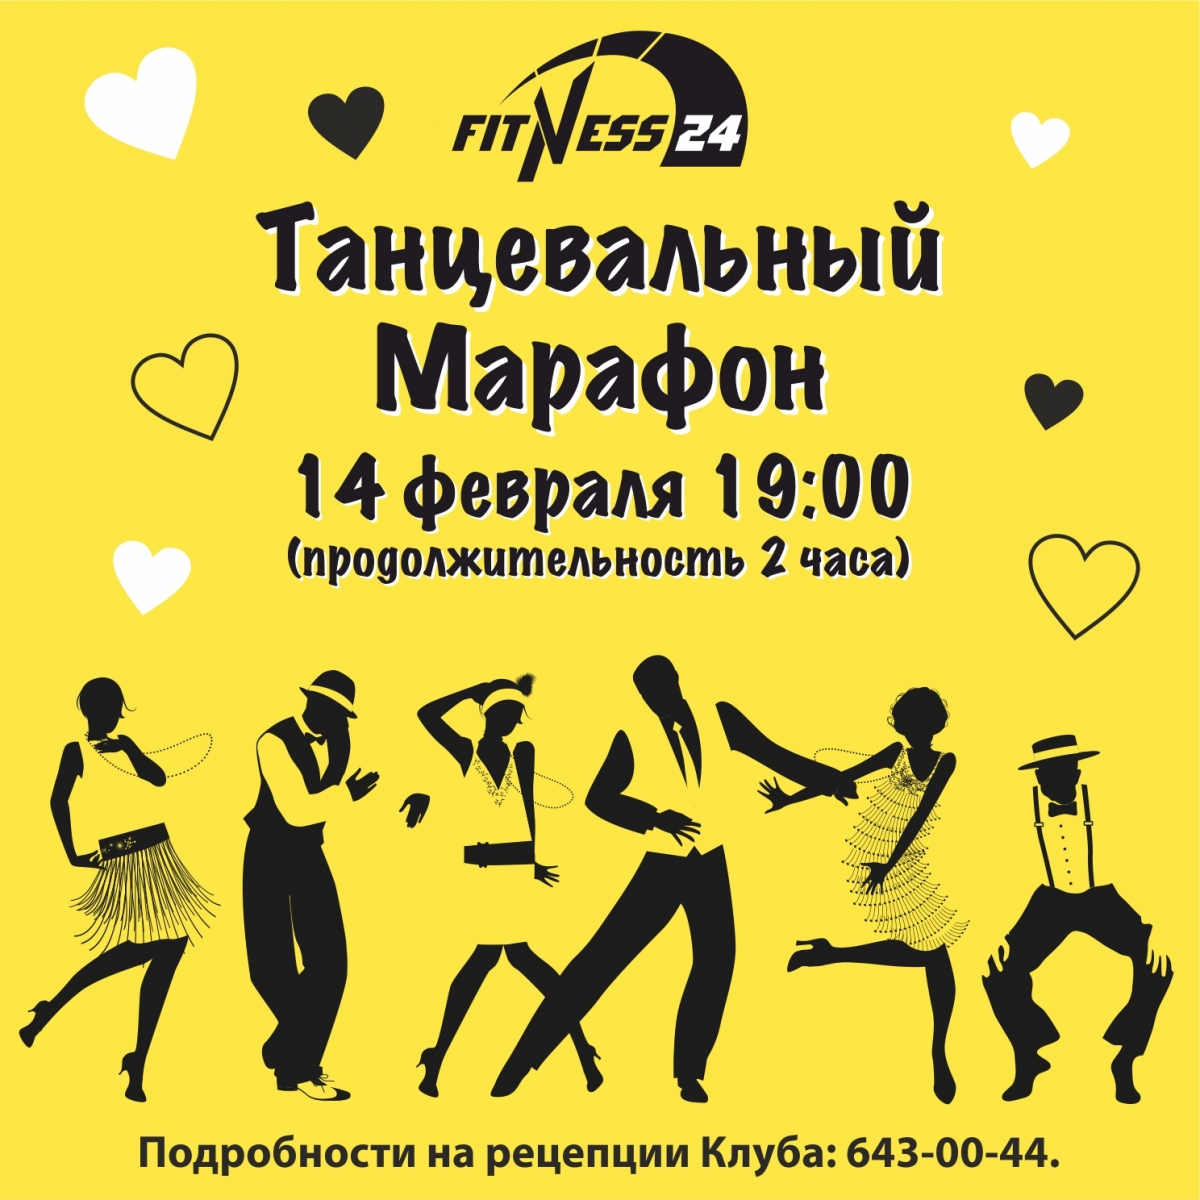 Танцевальный марафон Fitness24 Ветеранов